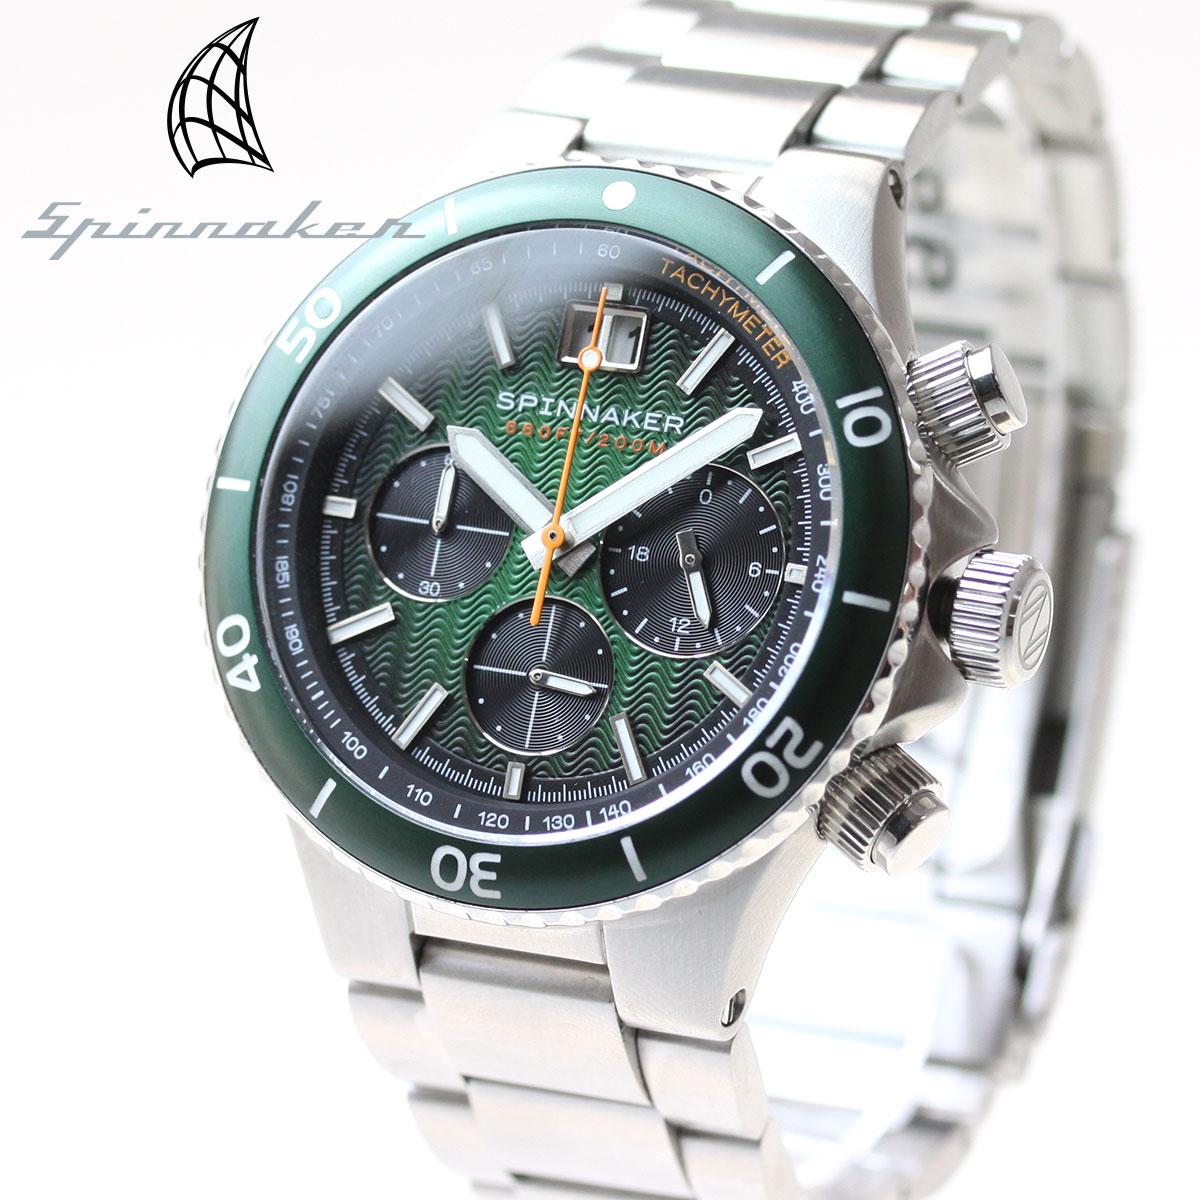  スピニカー SPINNAKER 腕時計 メンズ ハイドロフォイル HYDROFOIL メカクォーツ SP-5086-44